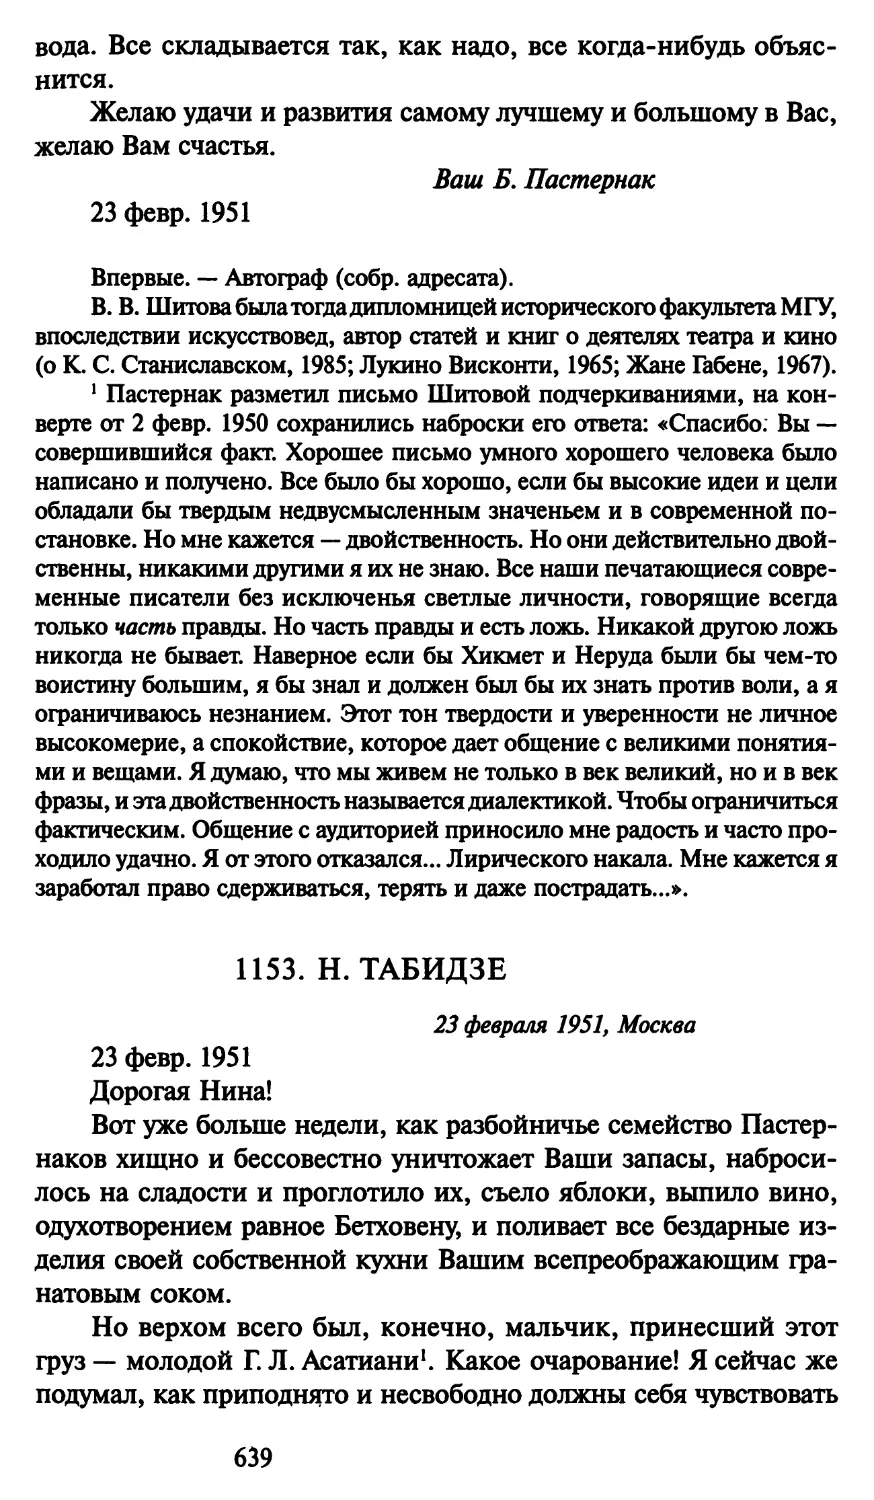 1153. Н. Табидзе 23 февраля 1951